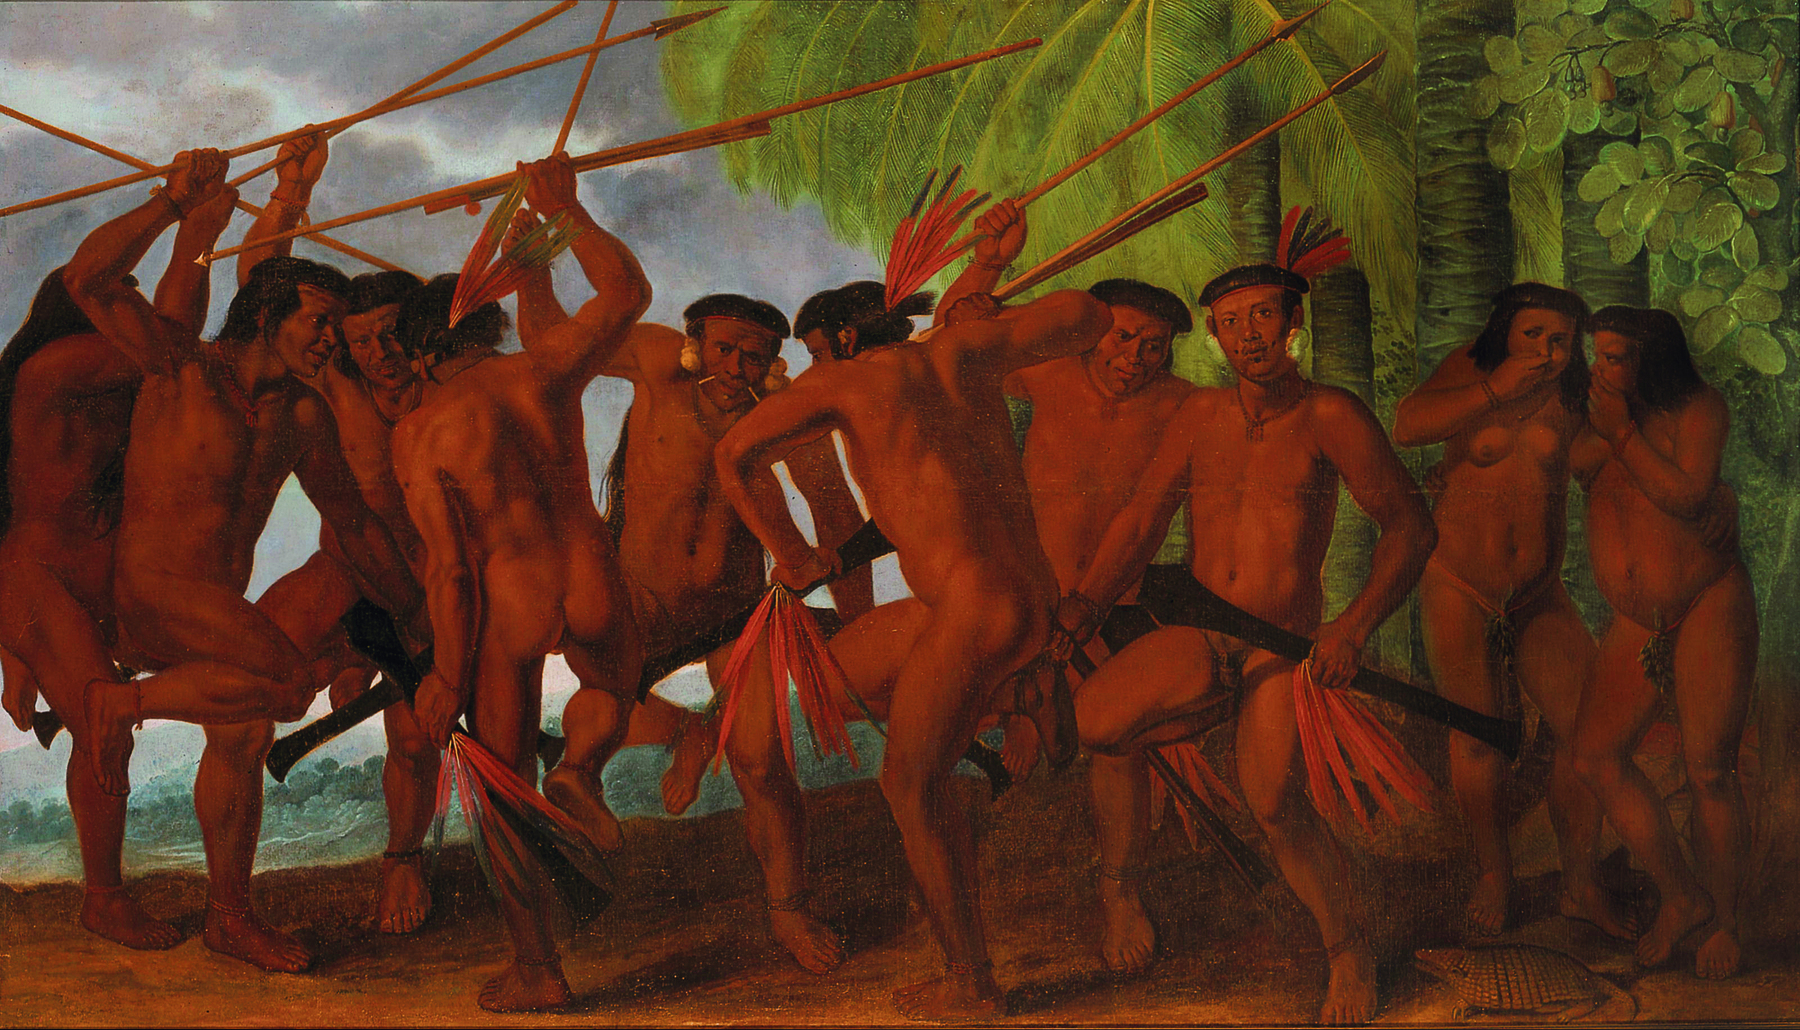 Pintura. Homens indígenas nus reunidos com lanças na mão. Estão com o corpo inclinado para frente, realizando uma dança. À direita, mulheres indígenas observam a dança.